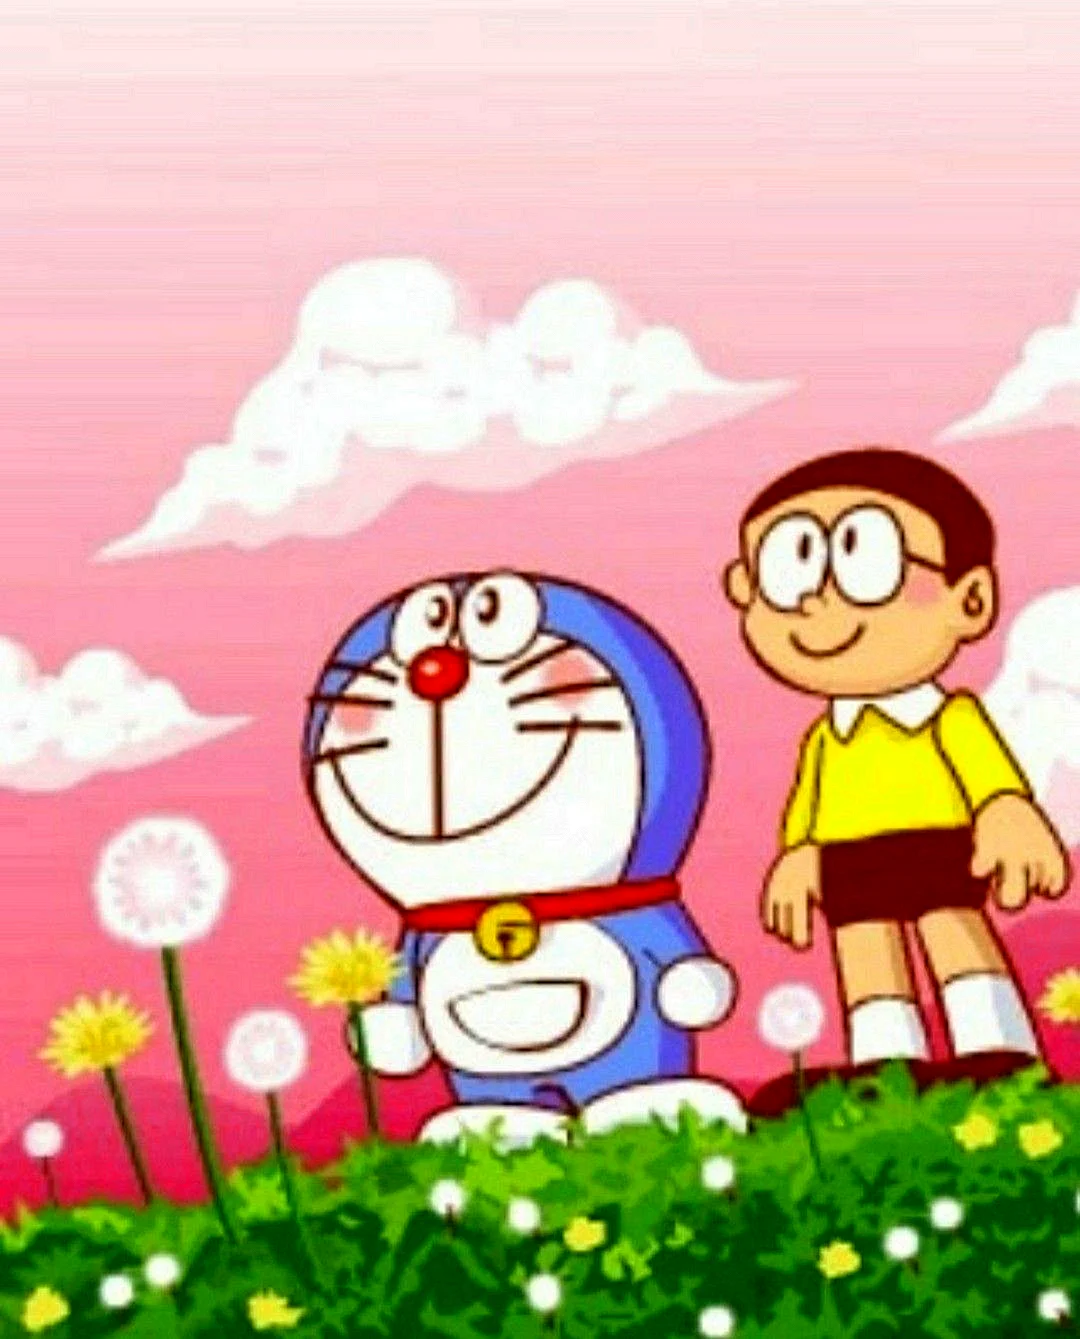 Doraemon Poster Wallpaper For iPhone